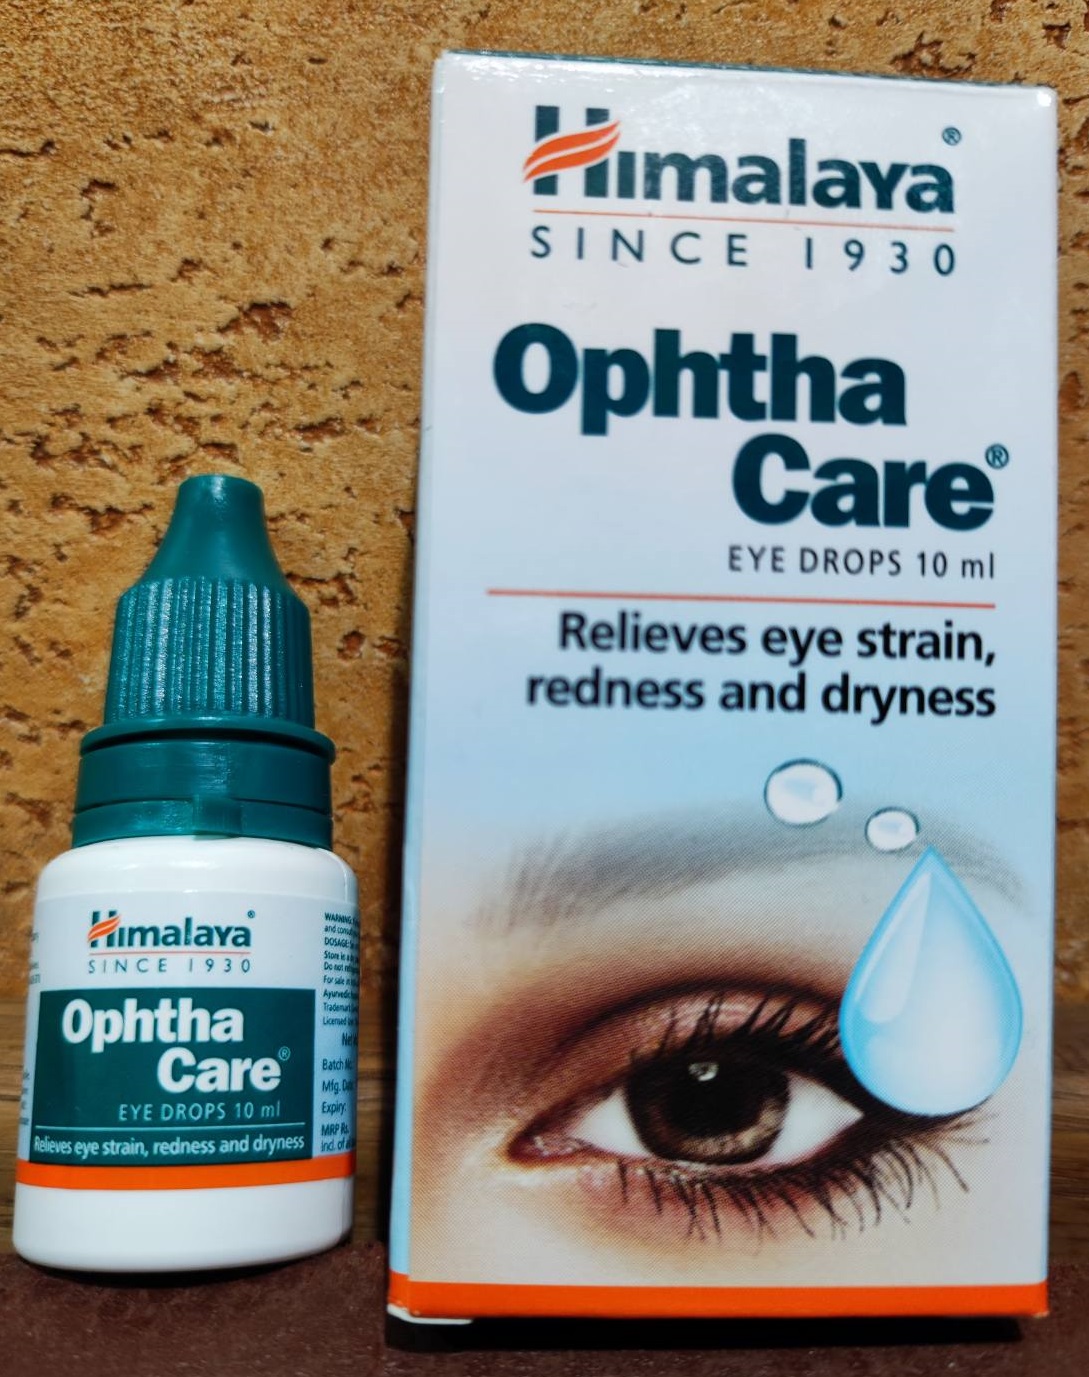 Ophtha care Himalaya Офта кер 10 мл Капли глазные Антибактериальные, Противовоспалительные, Снимают усталость, Напряжение глаз, при нагрузках